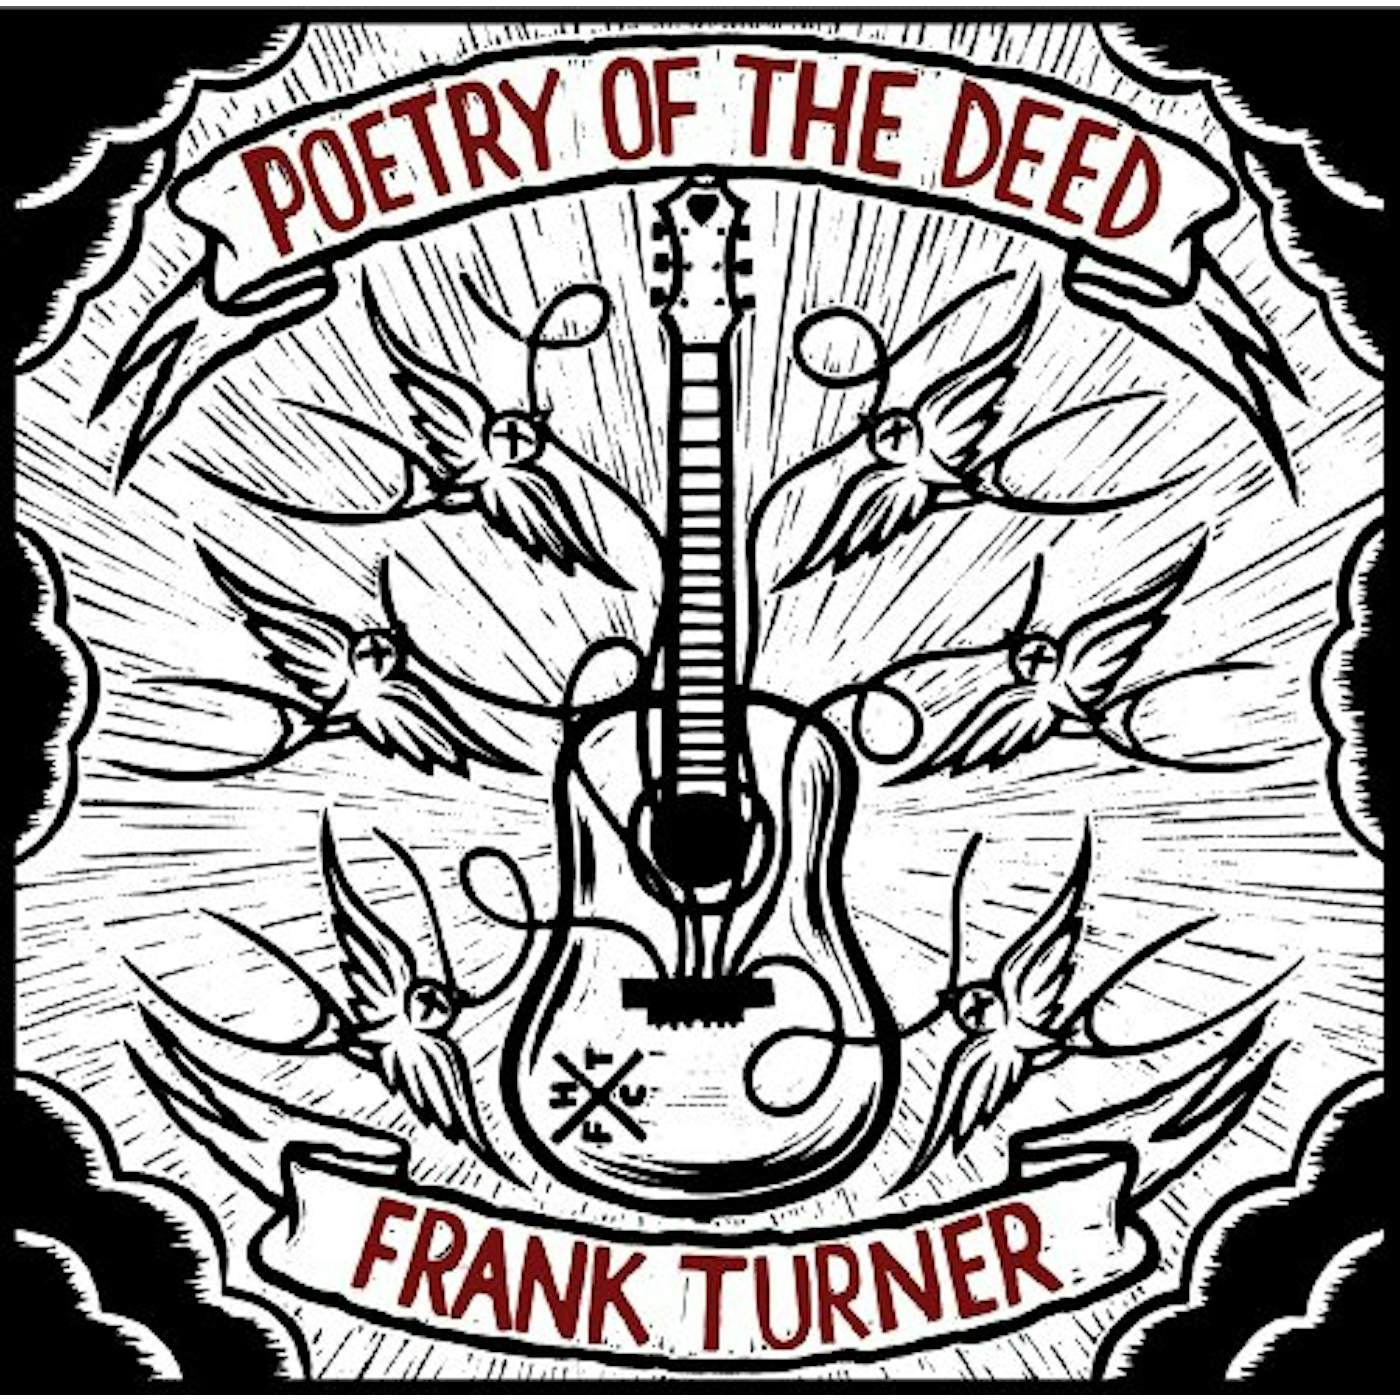 Frank Turner POETRY OF THE DEED CD